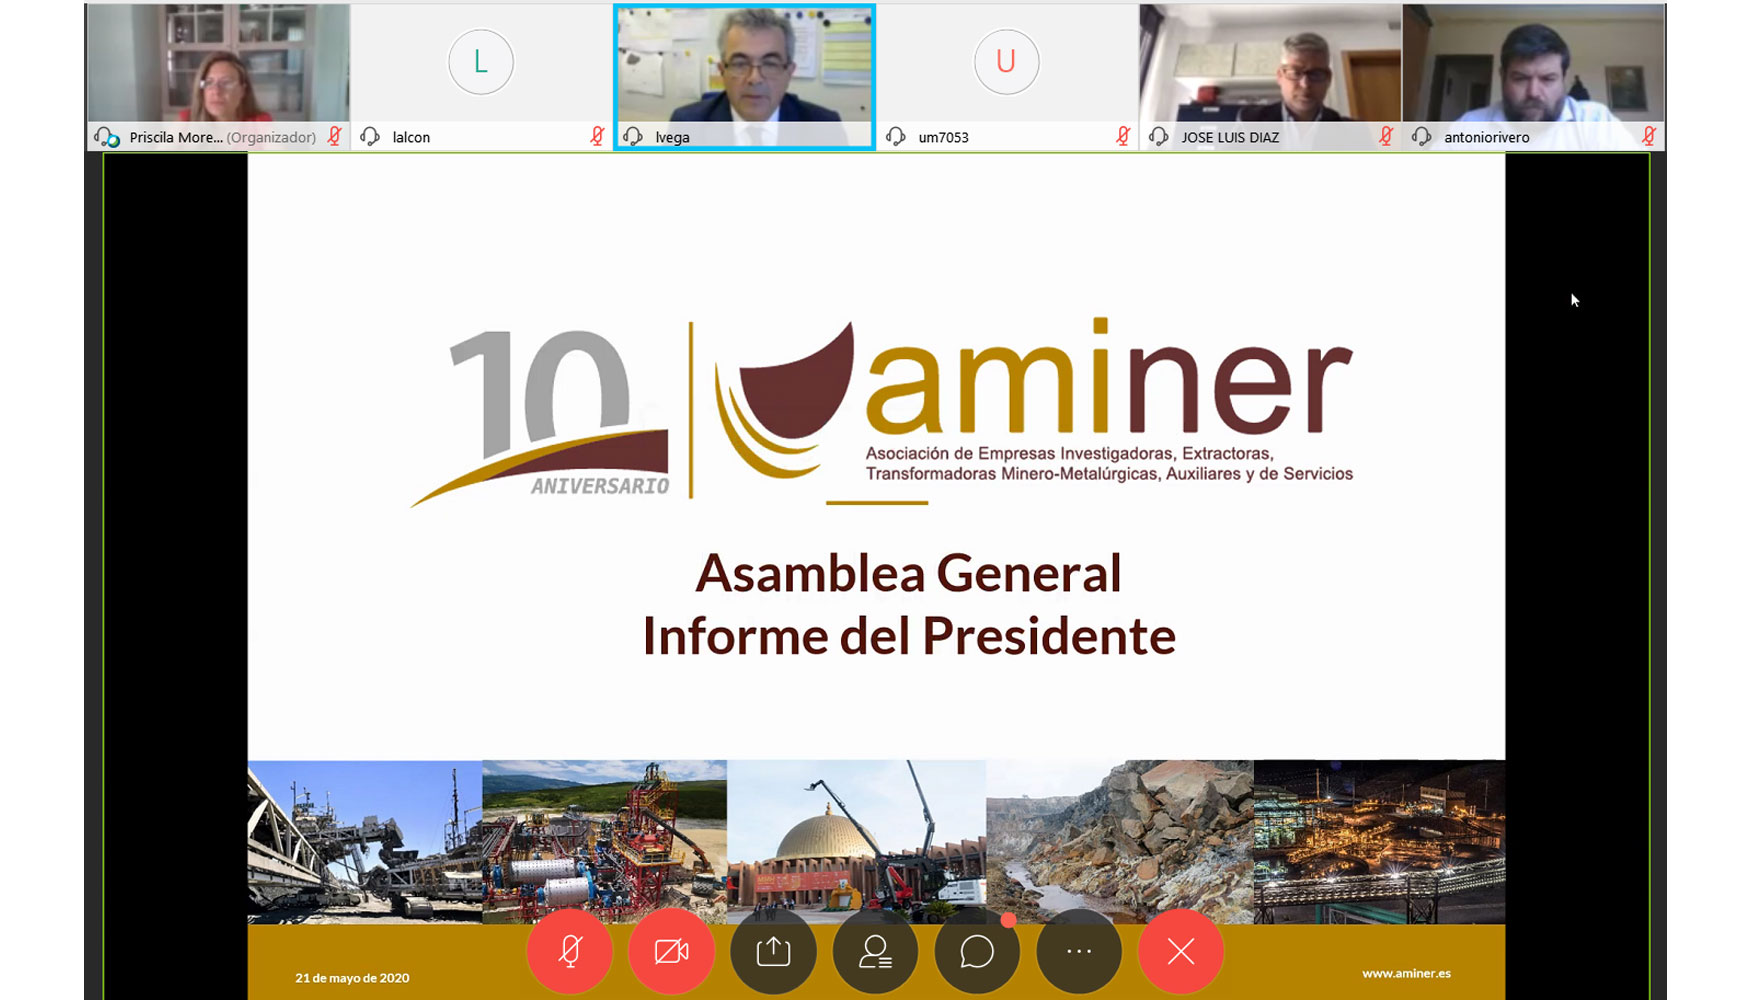 La X Asamblea General de Aminer se ha tenido que celebrar en modalidad online debido a la crisis del COVID-19